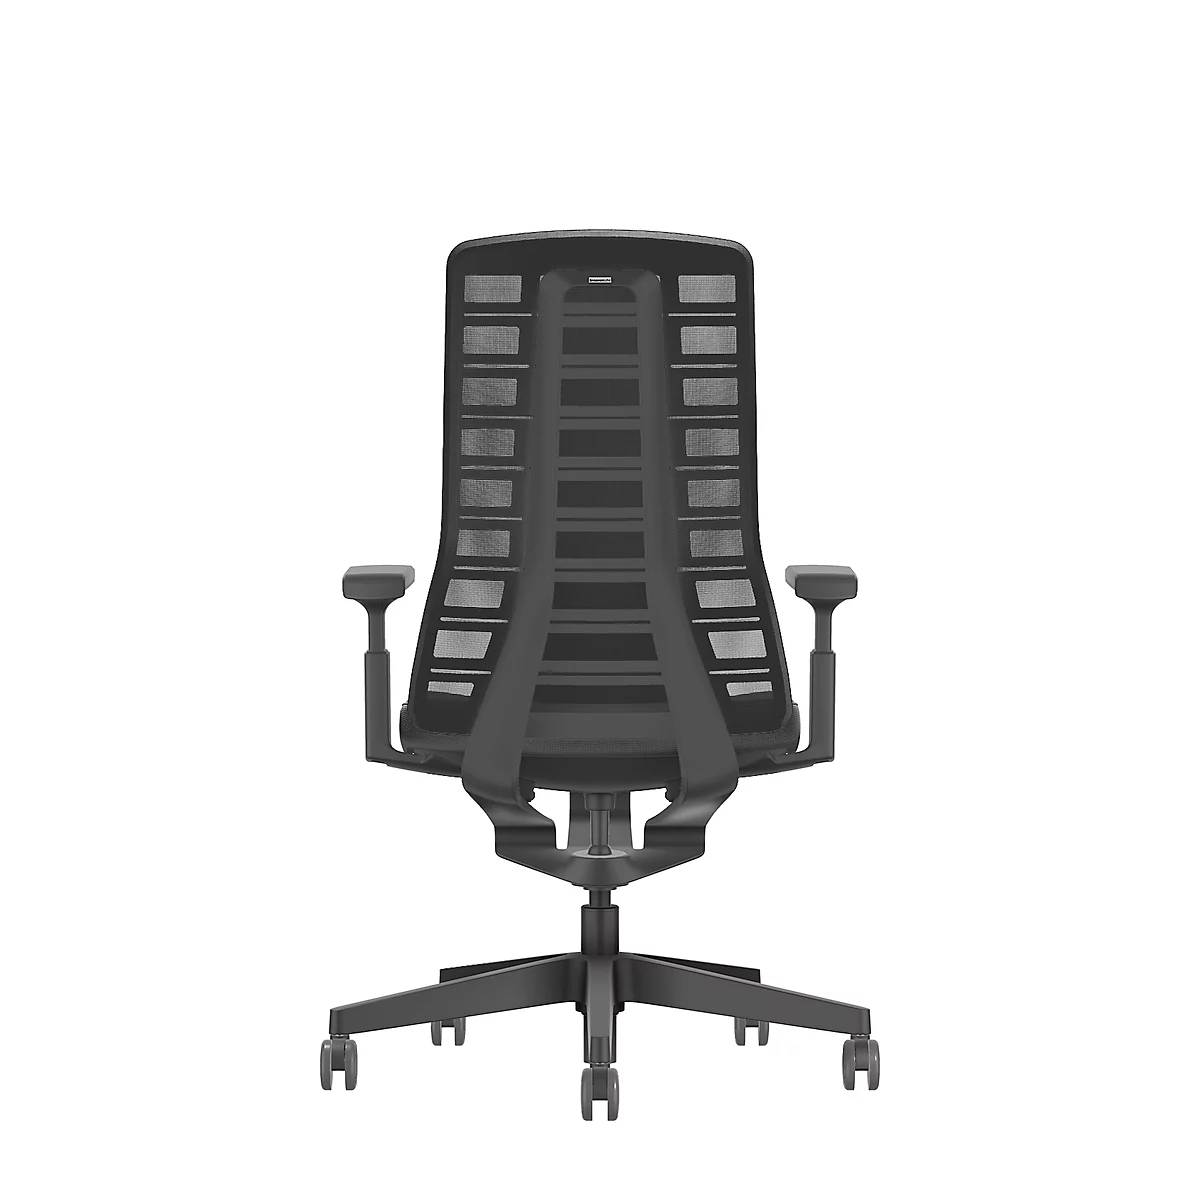 Interstuhl Bürostuhl PUREis3, verstellbare Armlehnen, 3D-Auto-Synchronmechanik, Muldensitz, Netzrücken, schwarz/schwarz